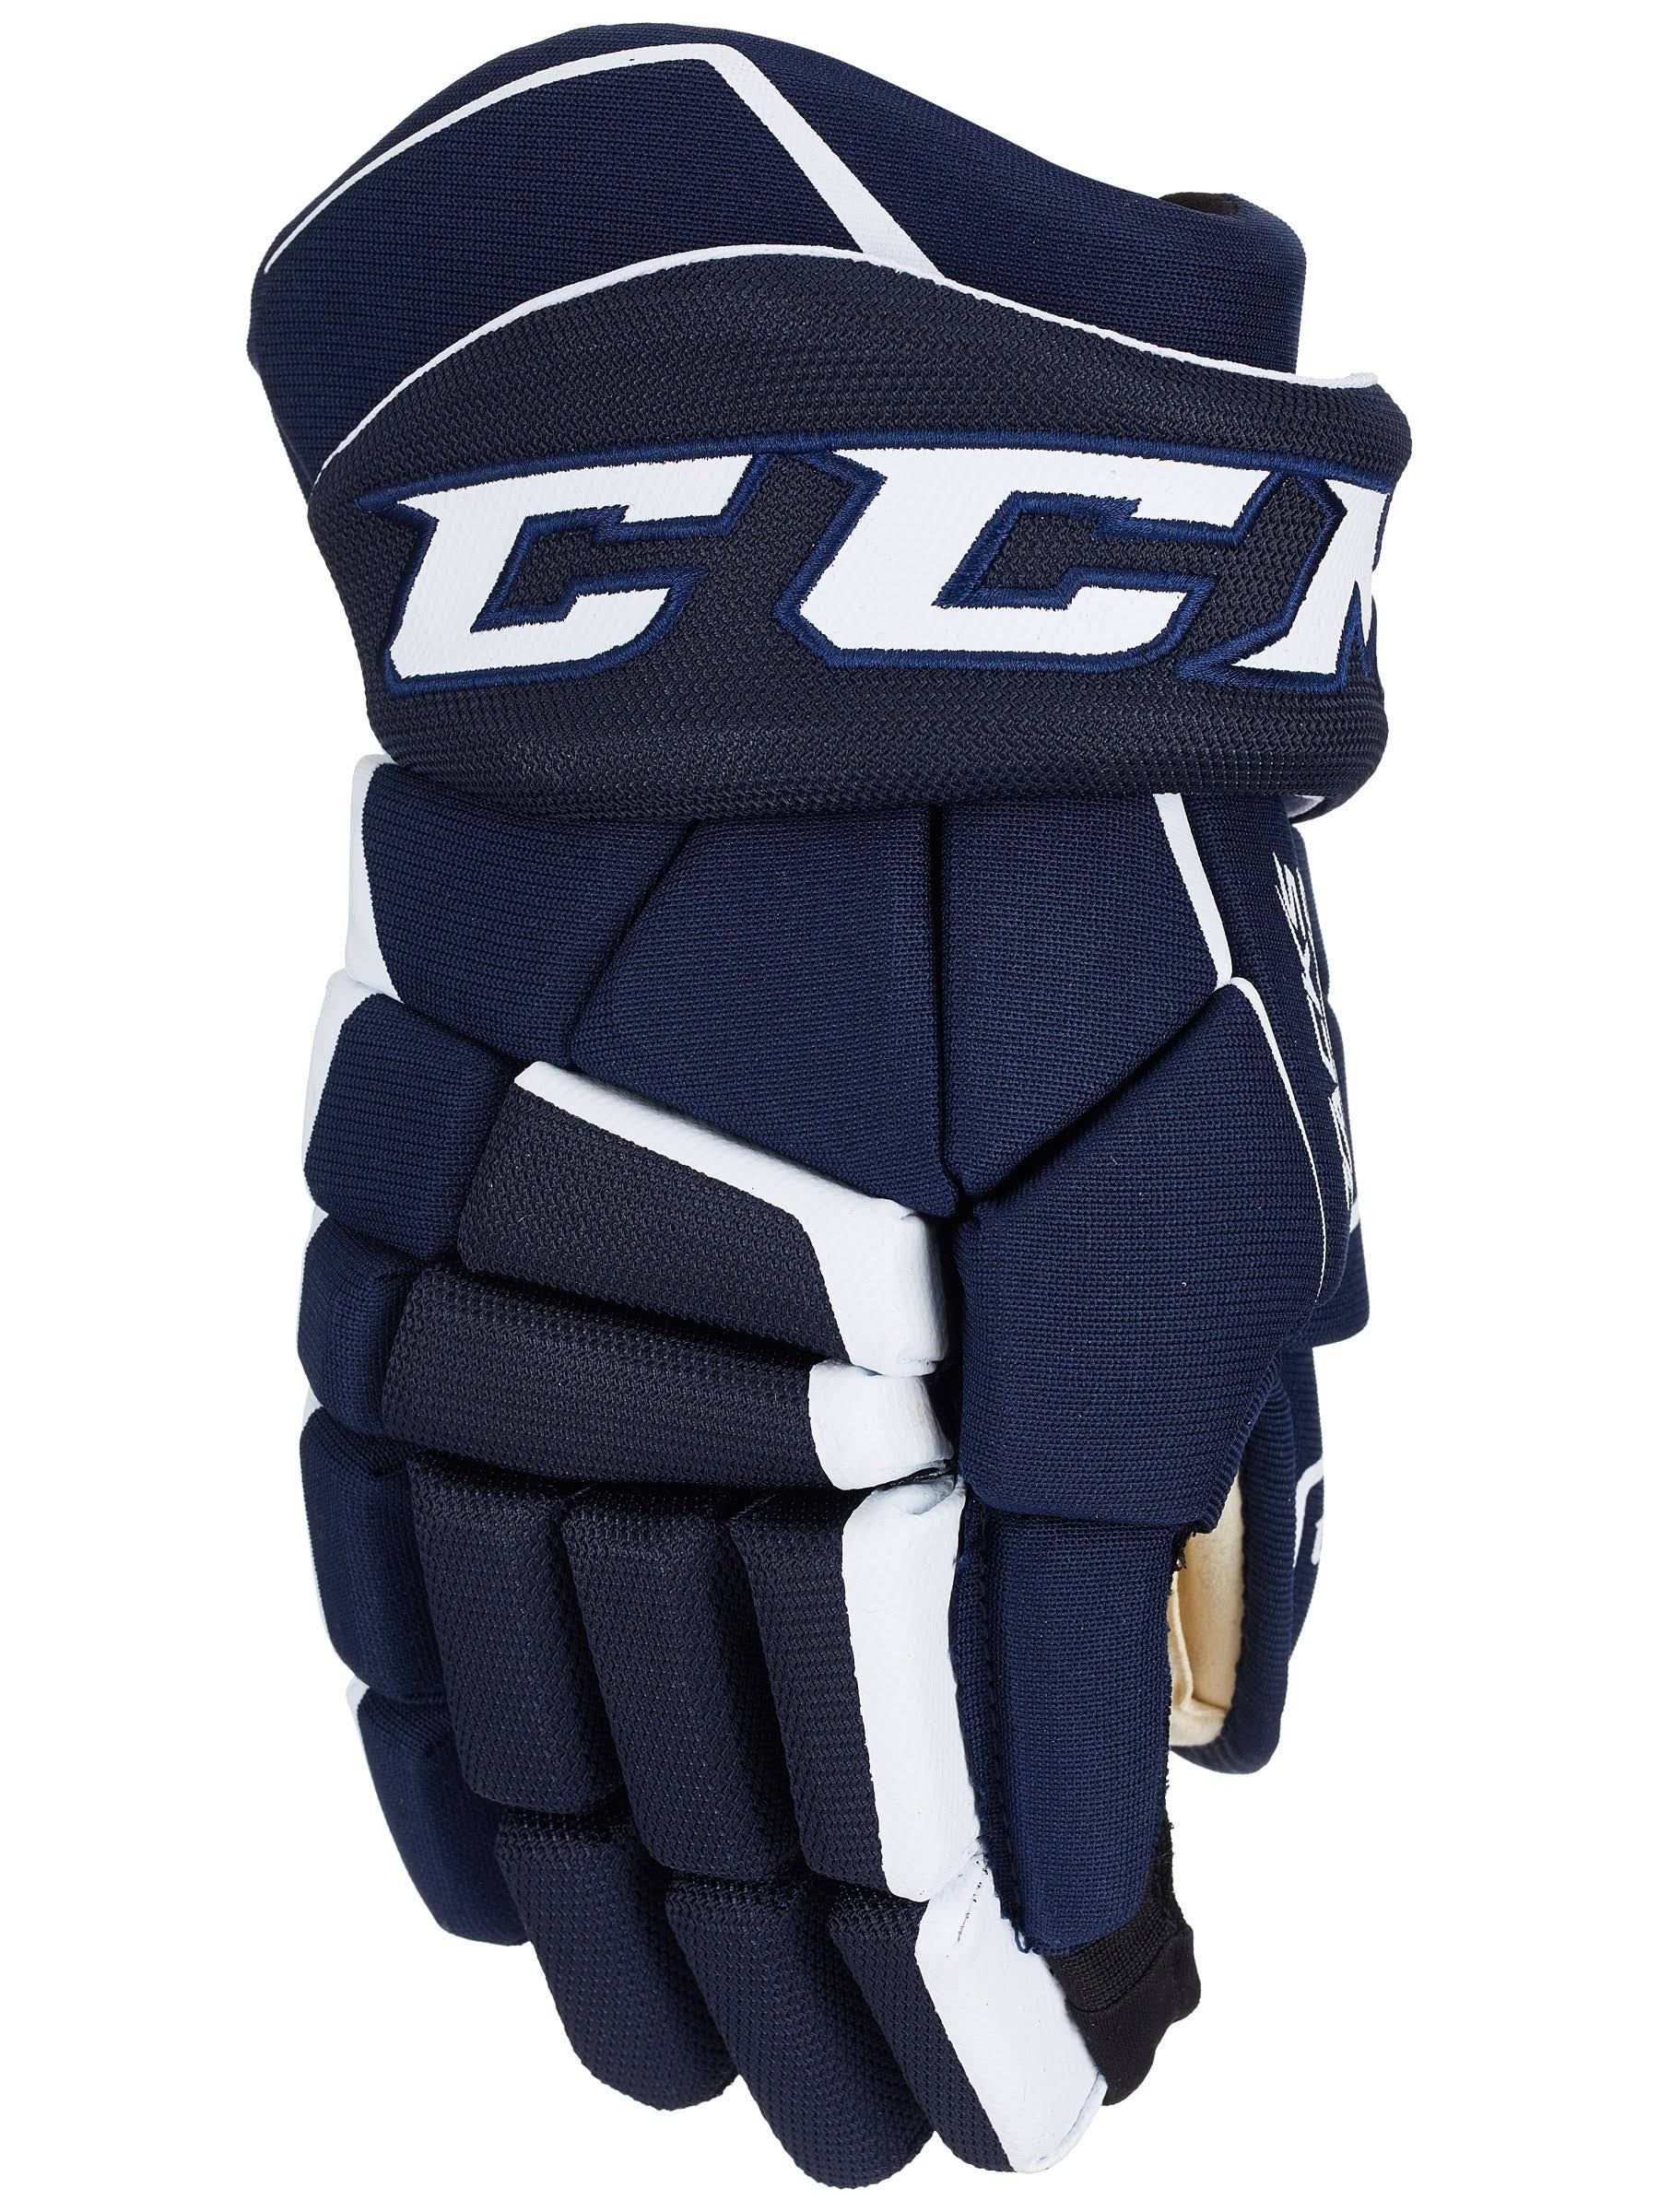 CCM Tacks 9040 Hockey Gloves - Junior - Navy/White - 11.0"